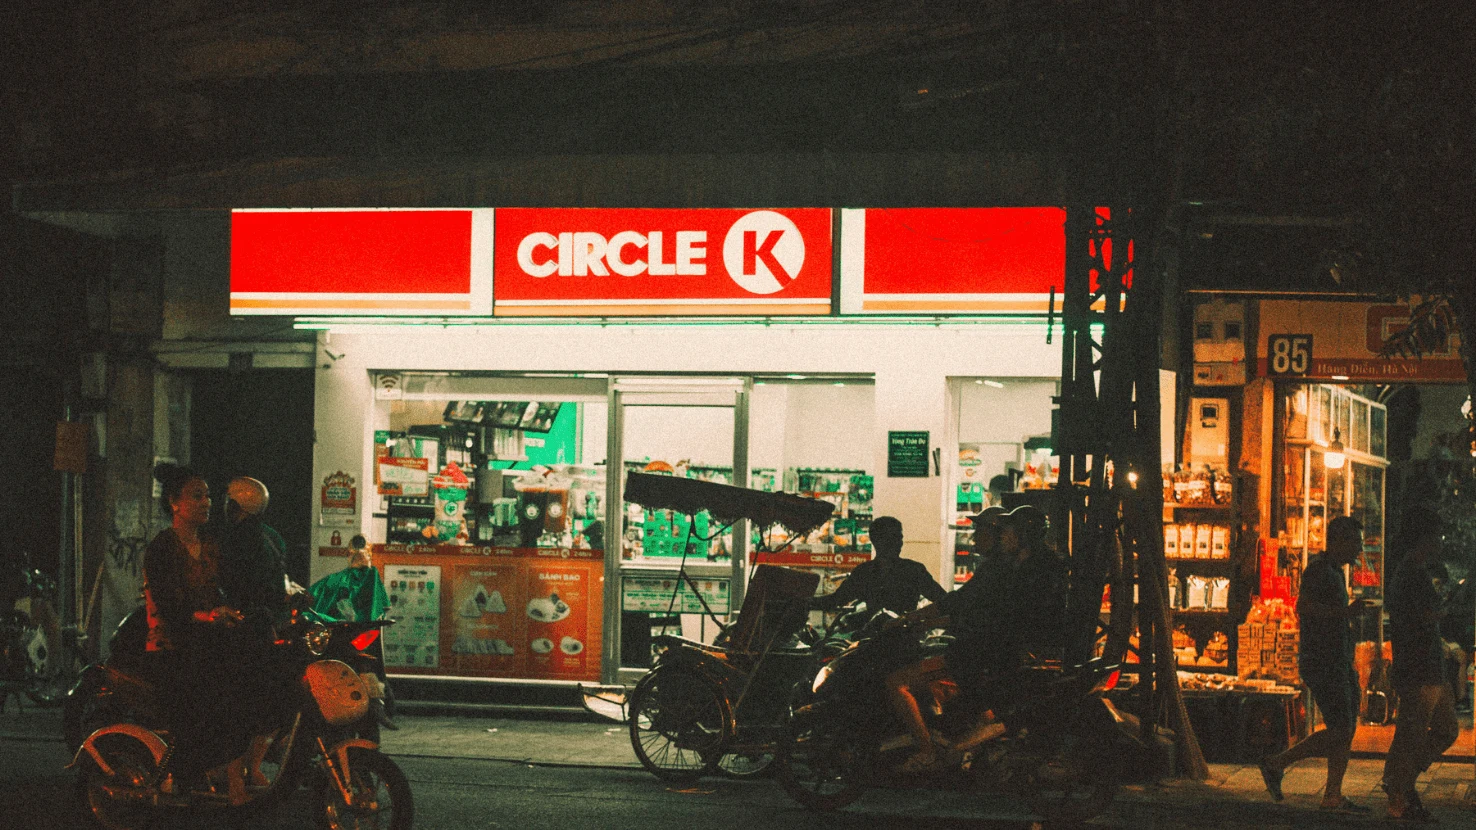 Circle K exterior at night